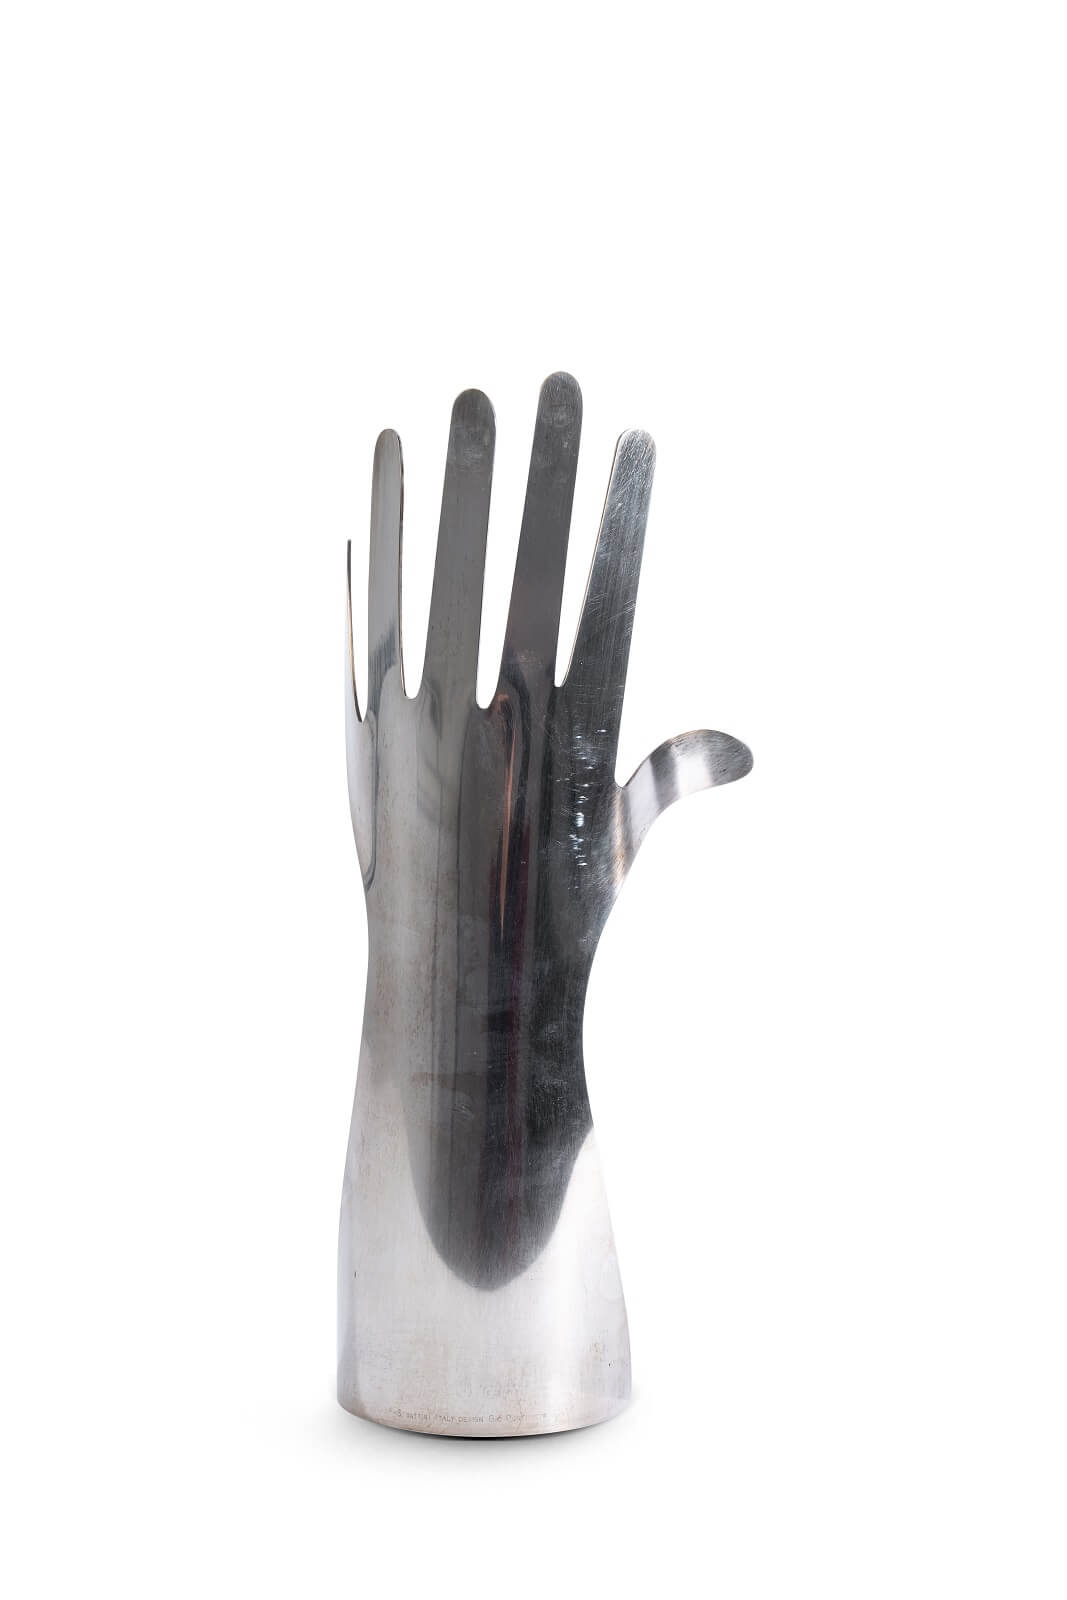 Статуэтка «Hand with 6 fingers», Gio Ponti - продажа в Москве